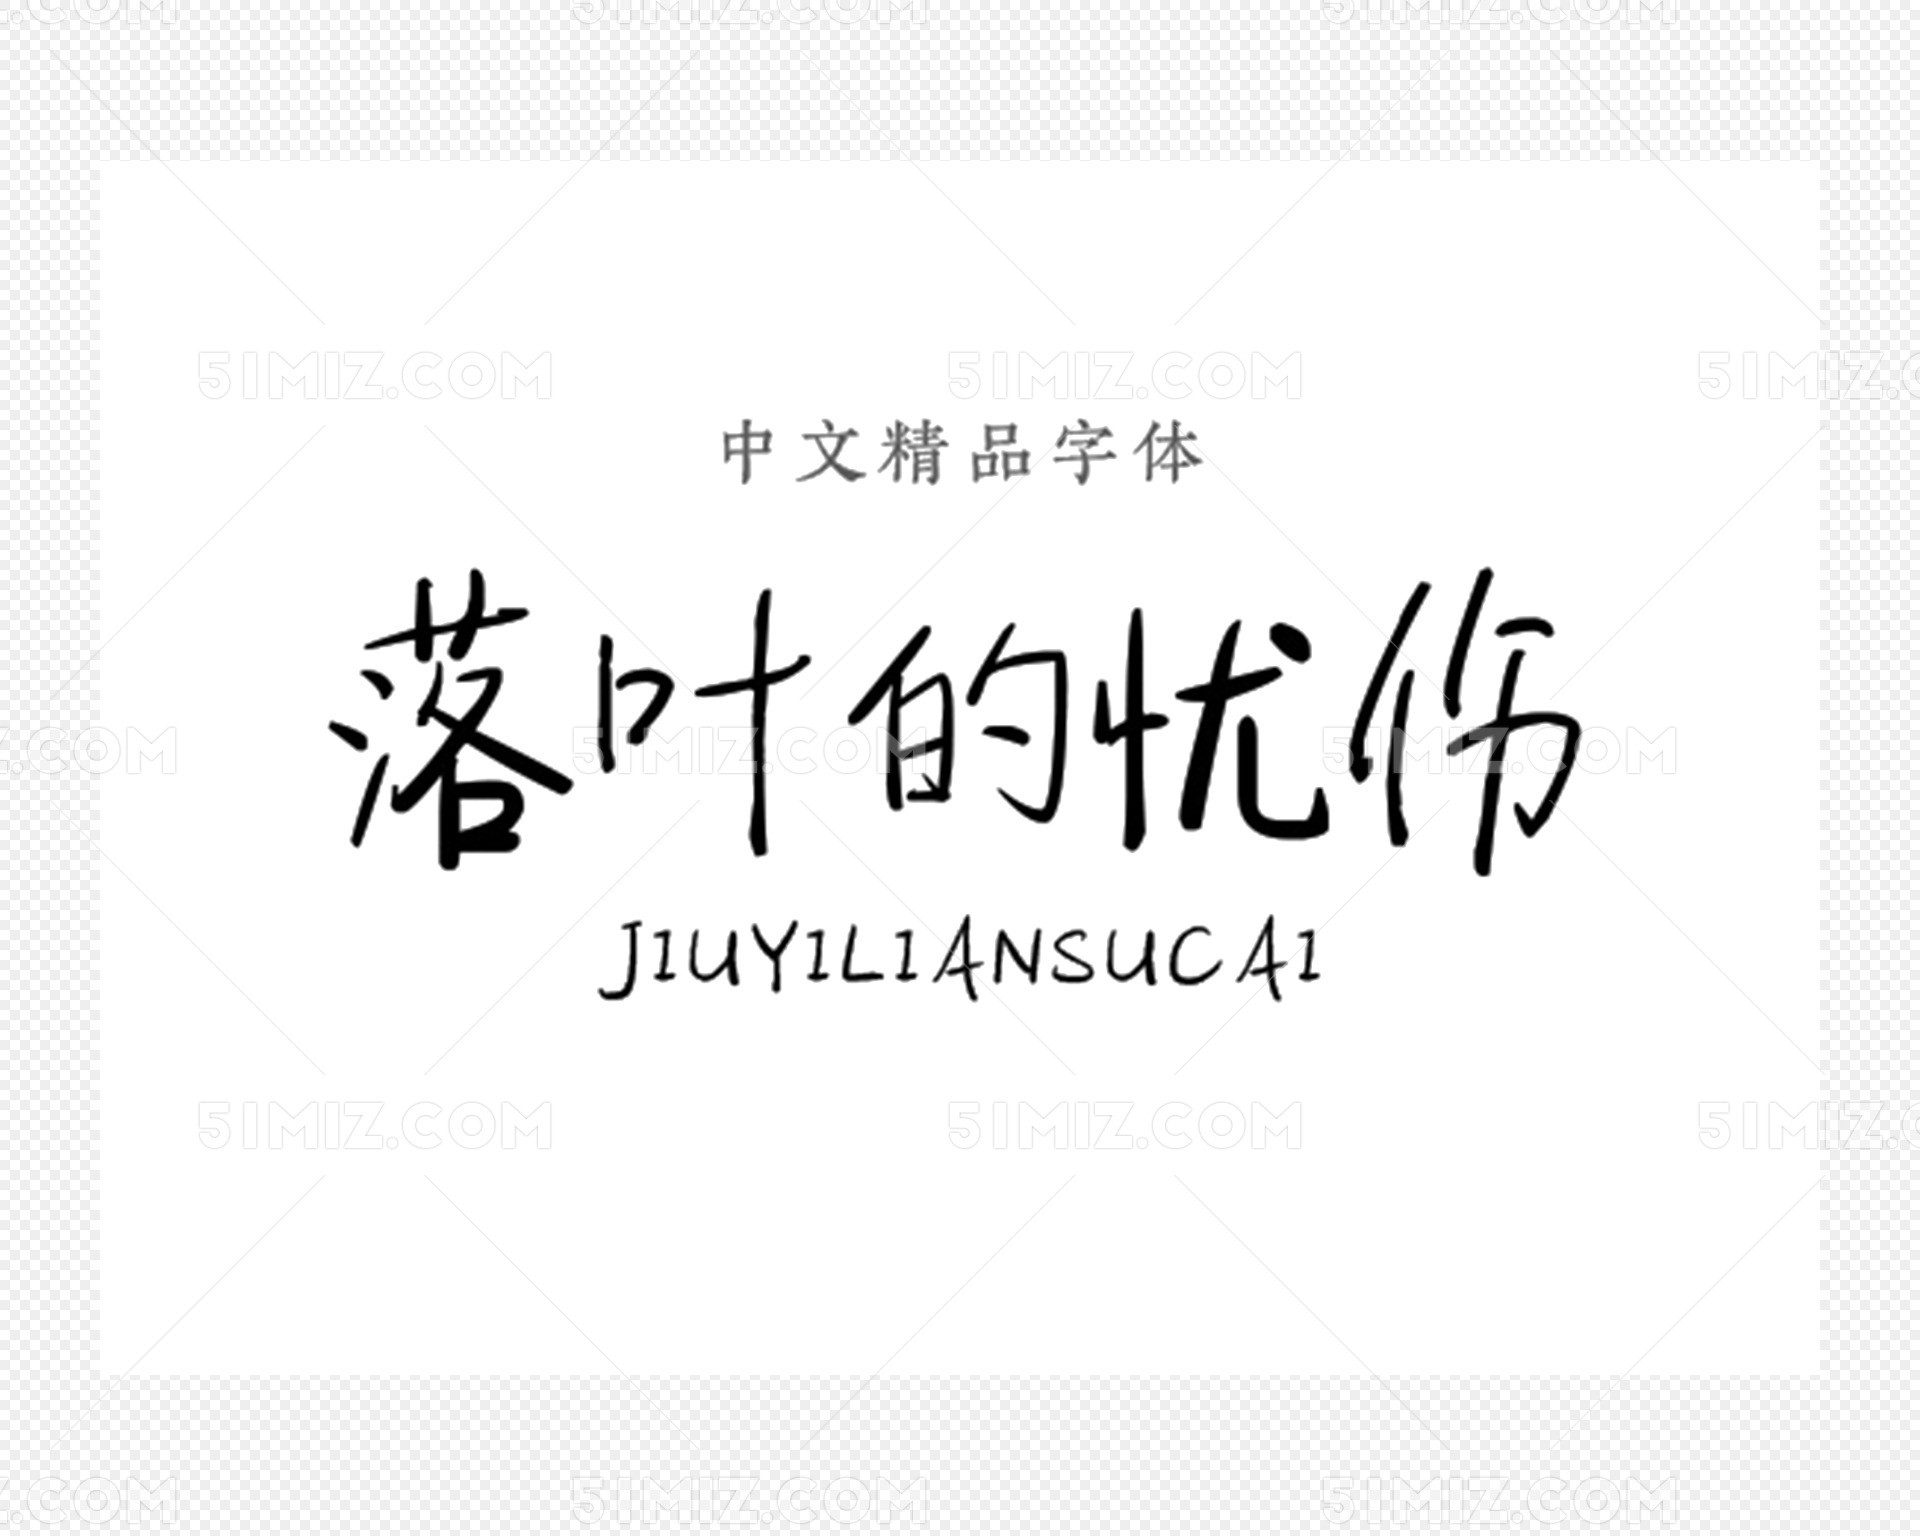 中文汉字字体包下载字体